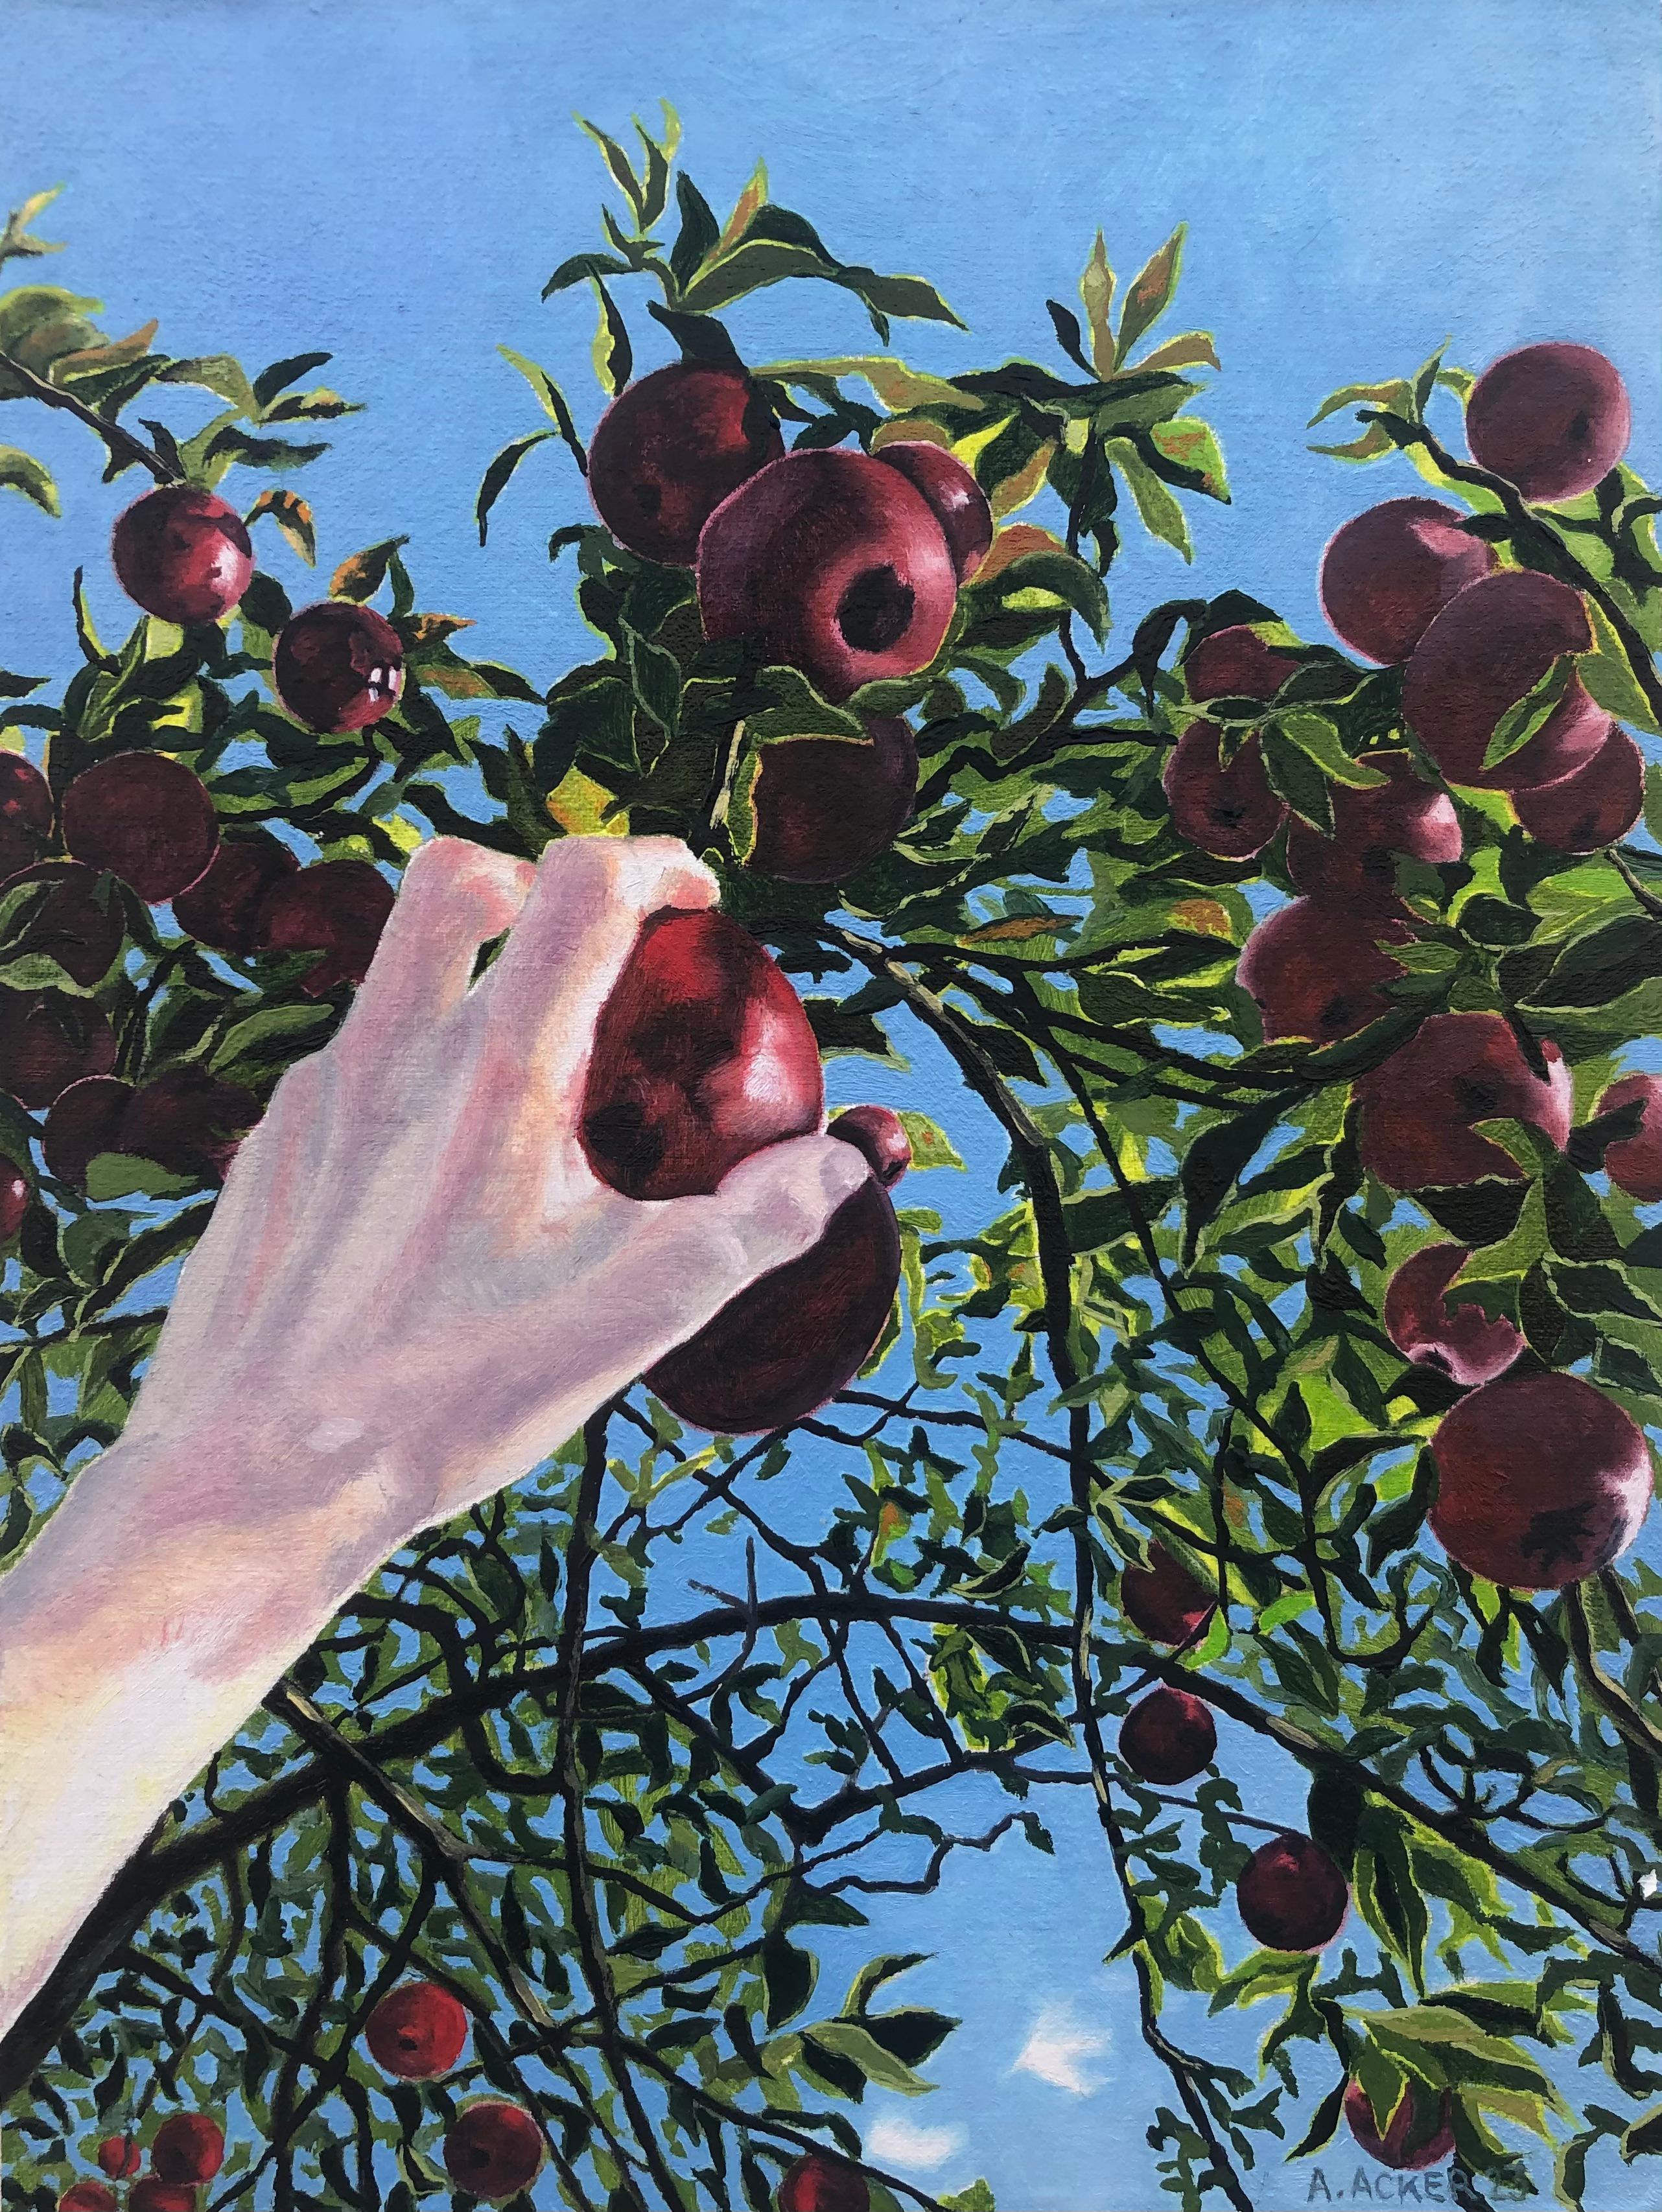 Apfelpflücken, Handarbeiten für rote Früchte, grüne Blätter, Baum, blauer Himmel, Herbst